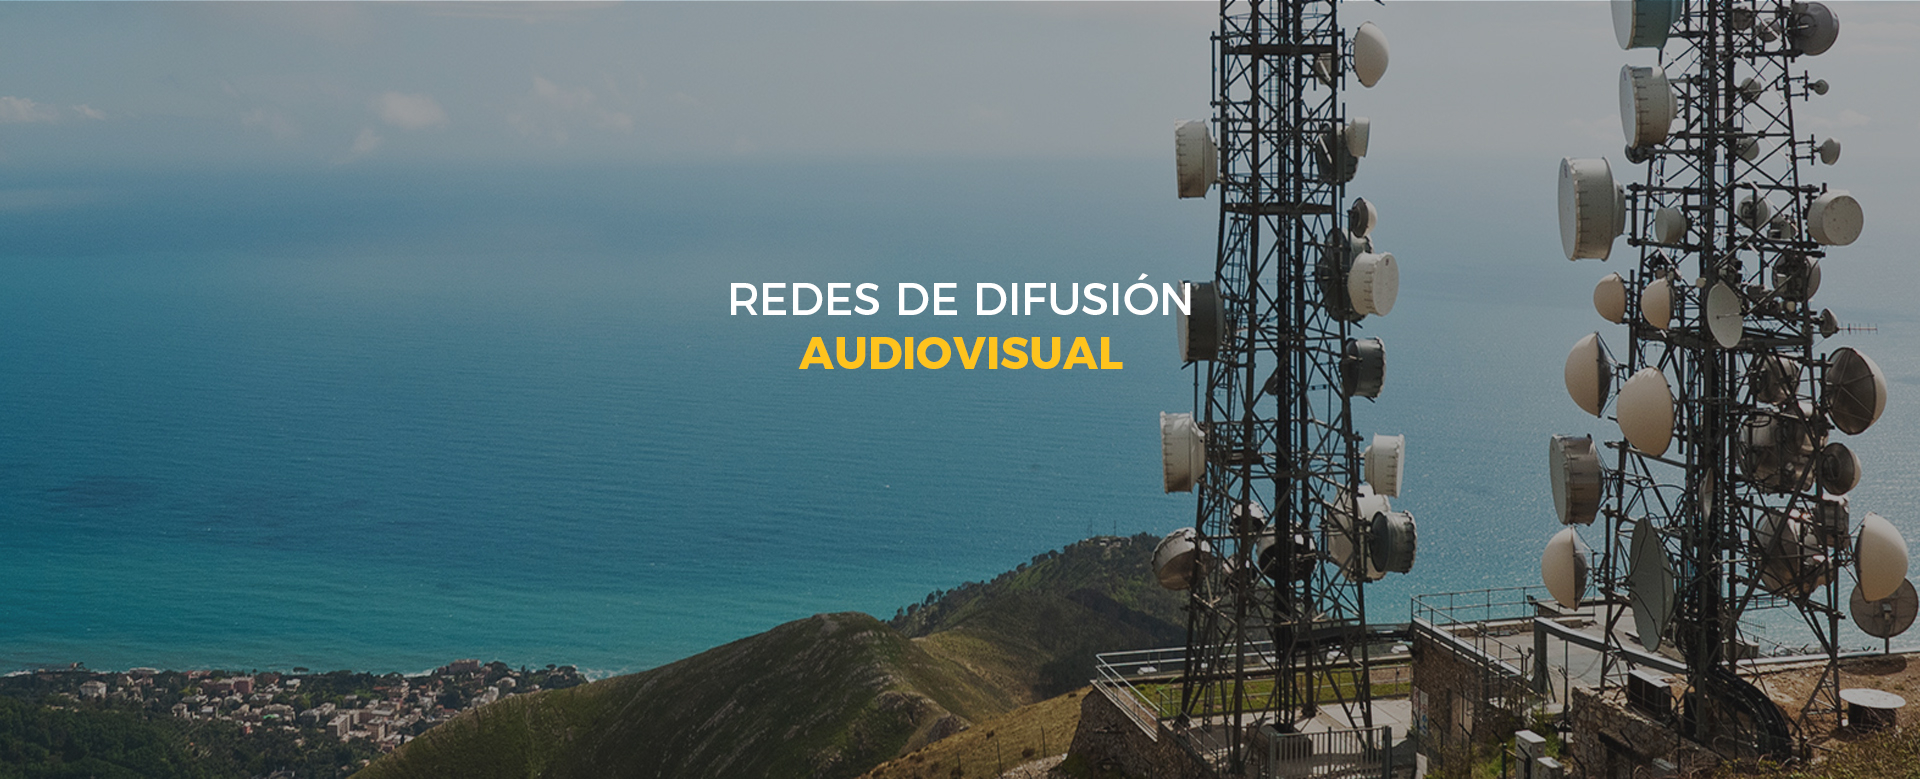 Redes de difusión audiovisual.